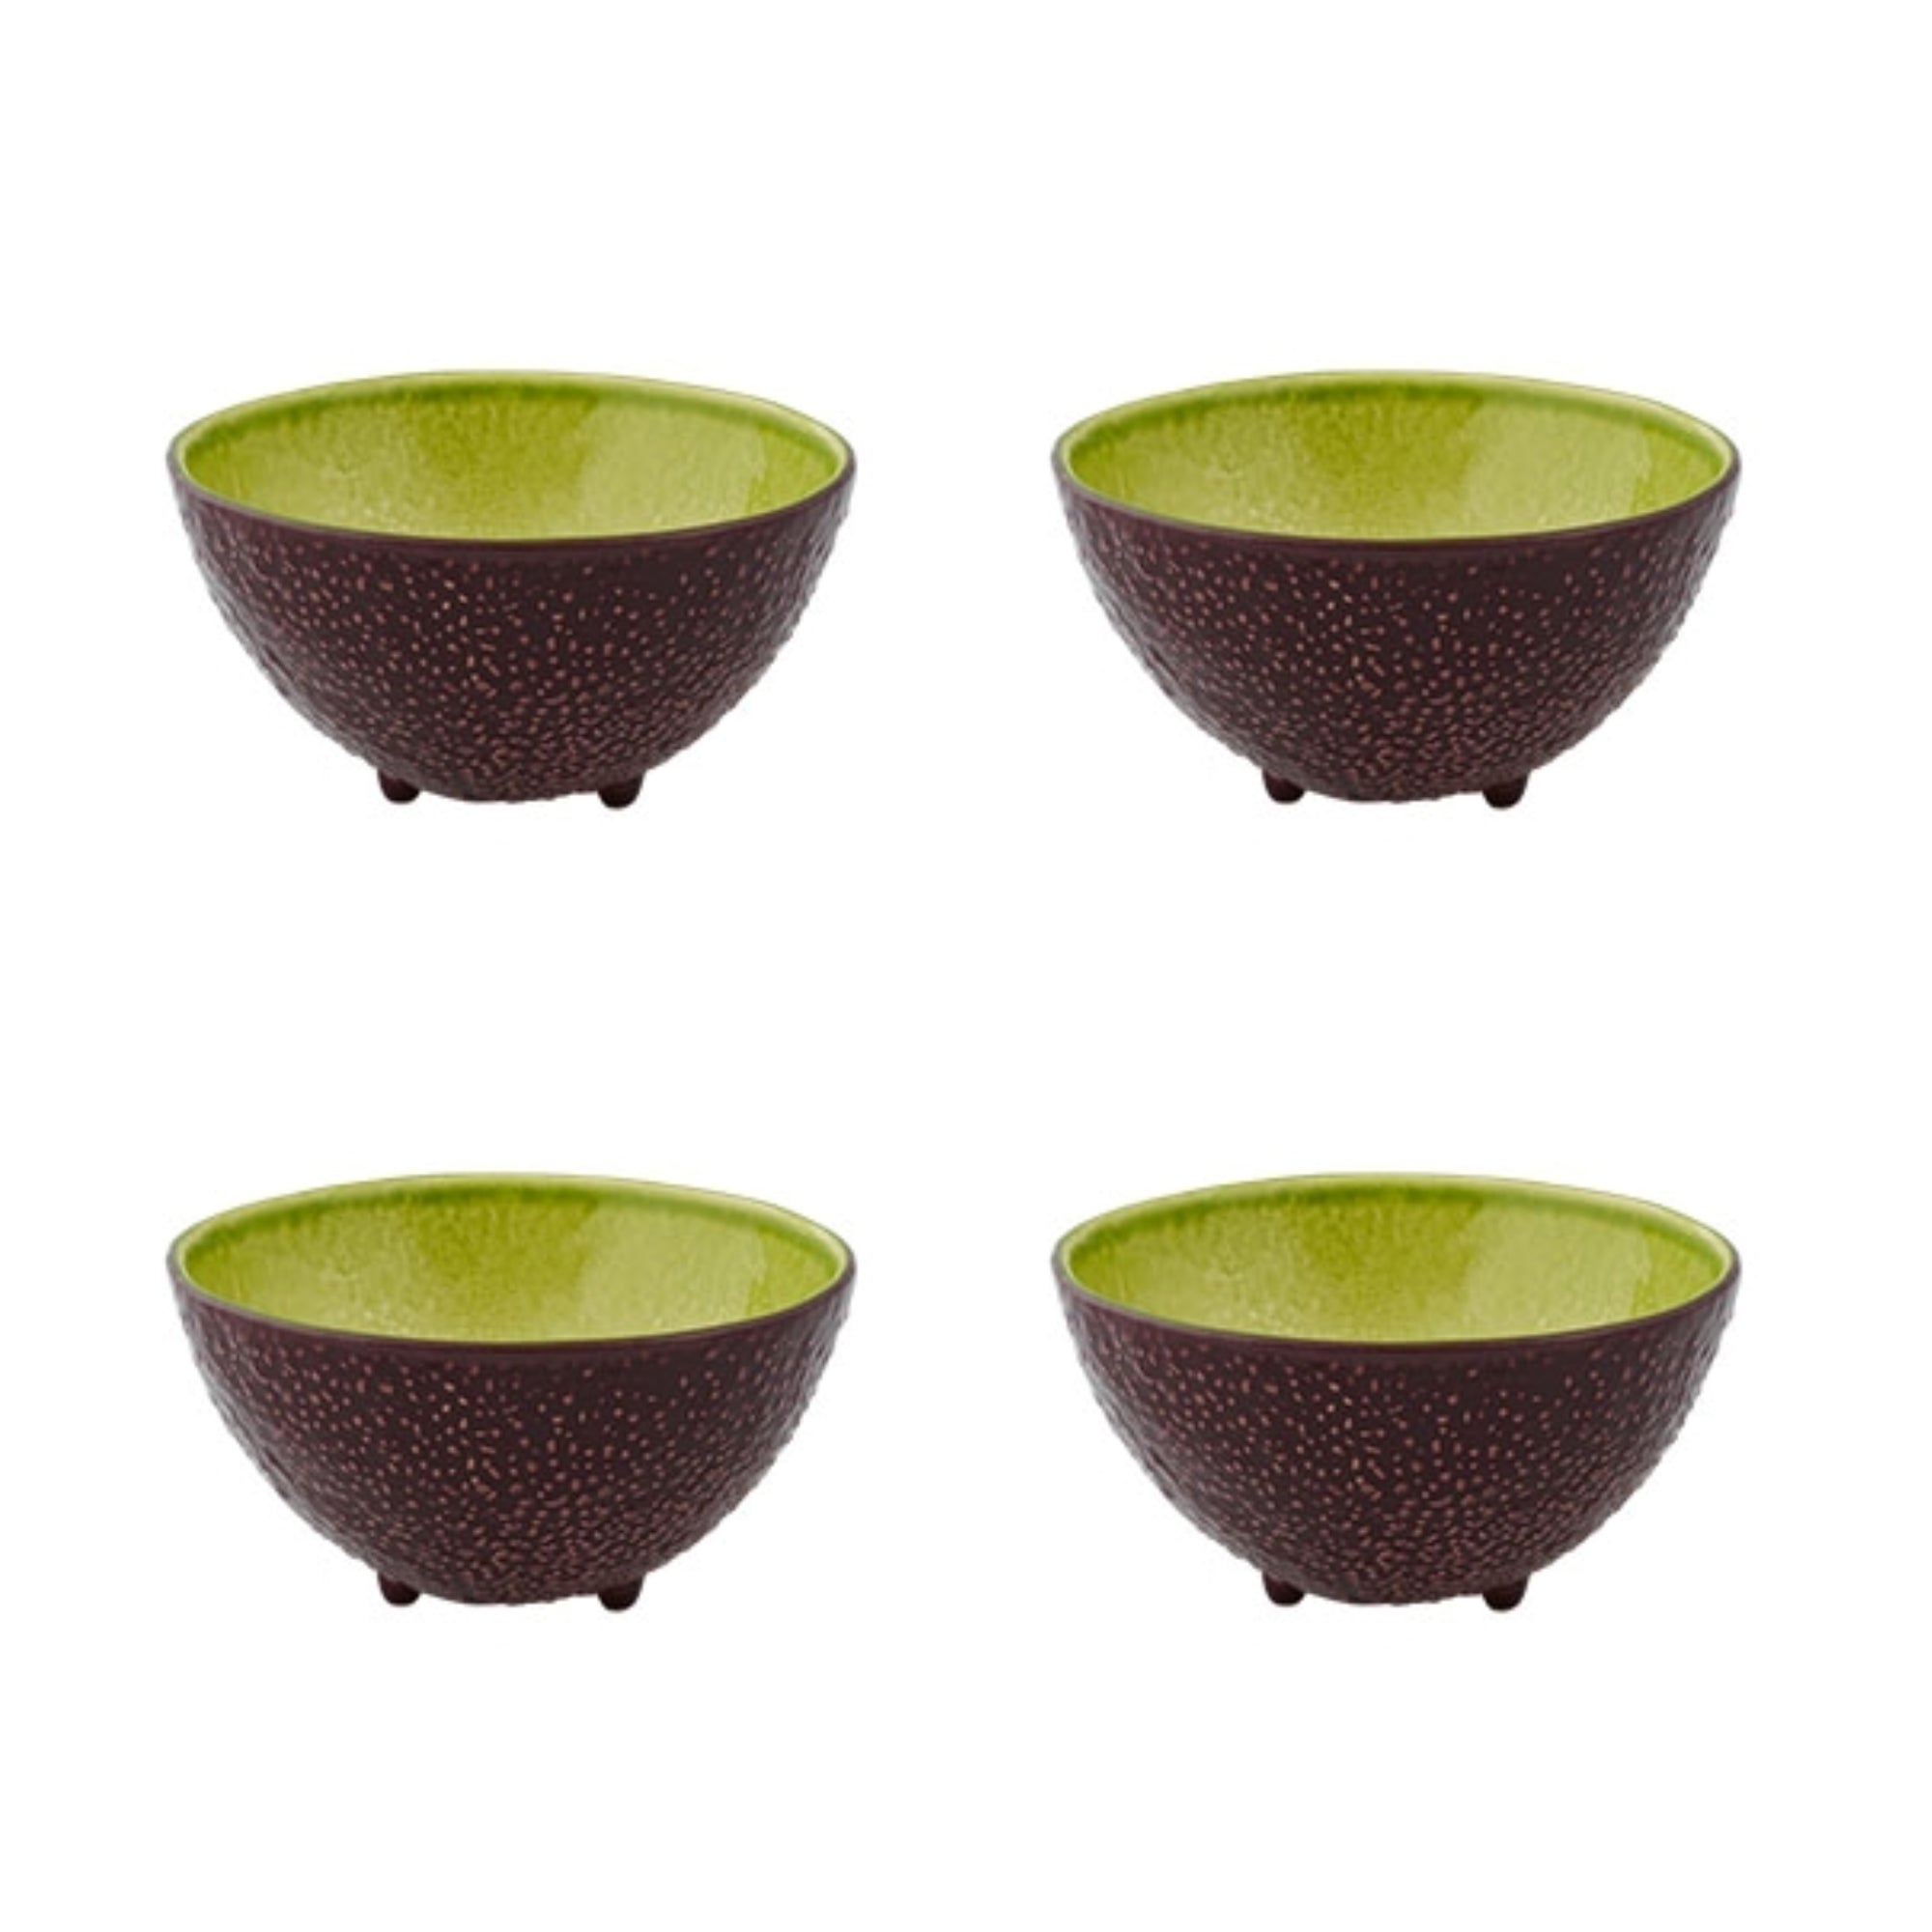 Bordallo Pinheiro Frutos Tropicais Set 4 Tropical Fruit Bowls, 13 cm